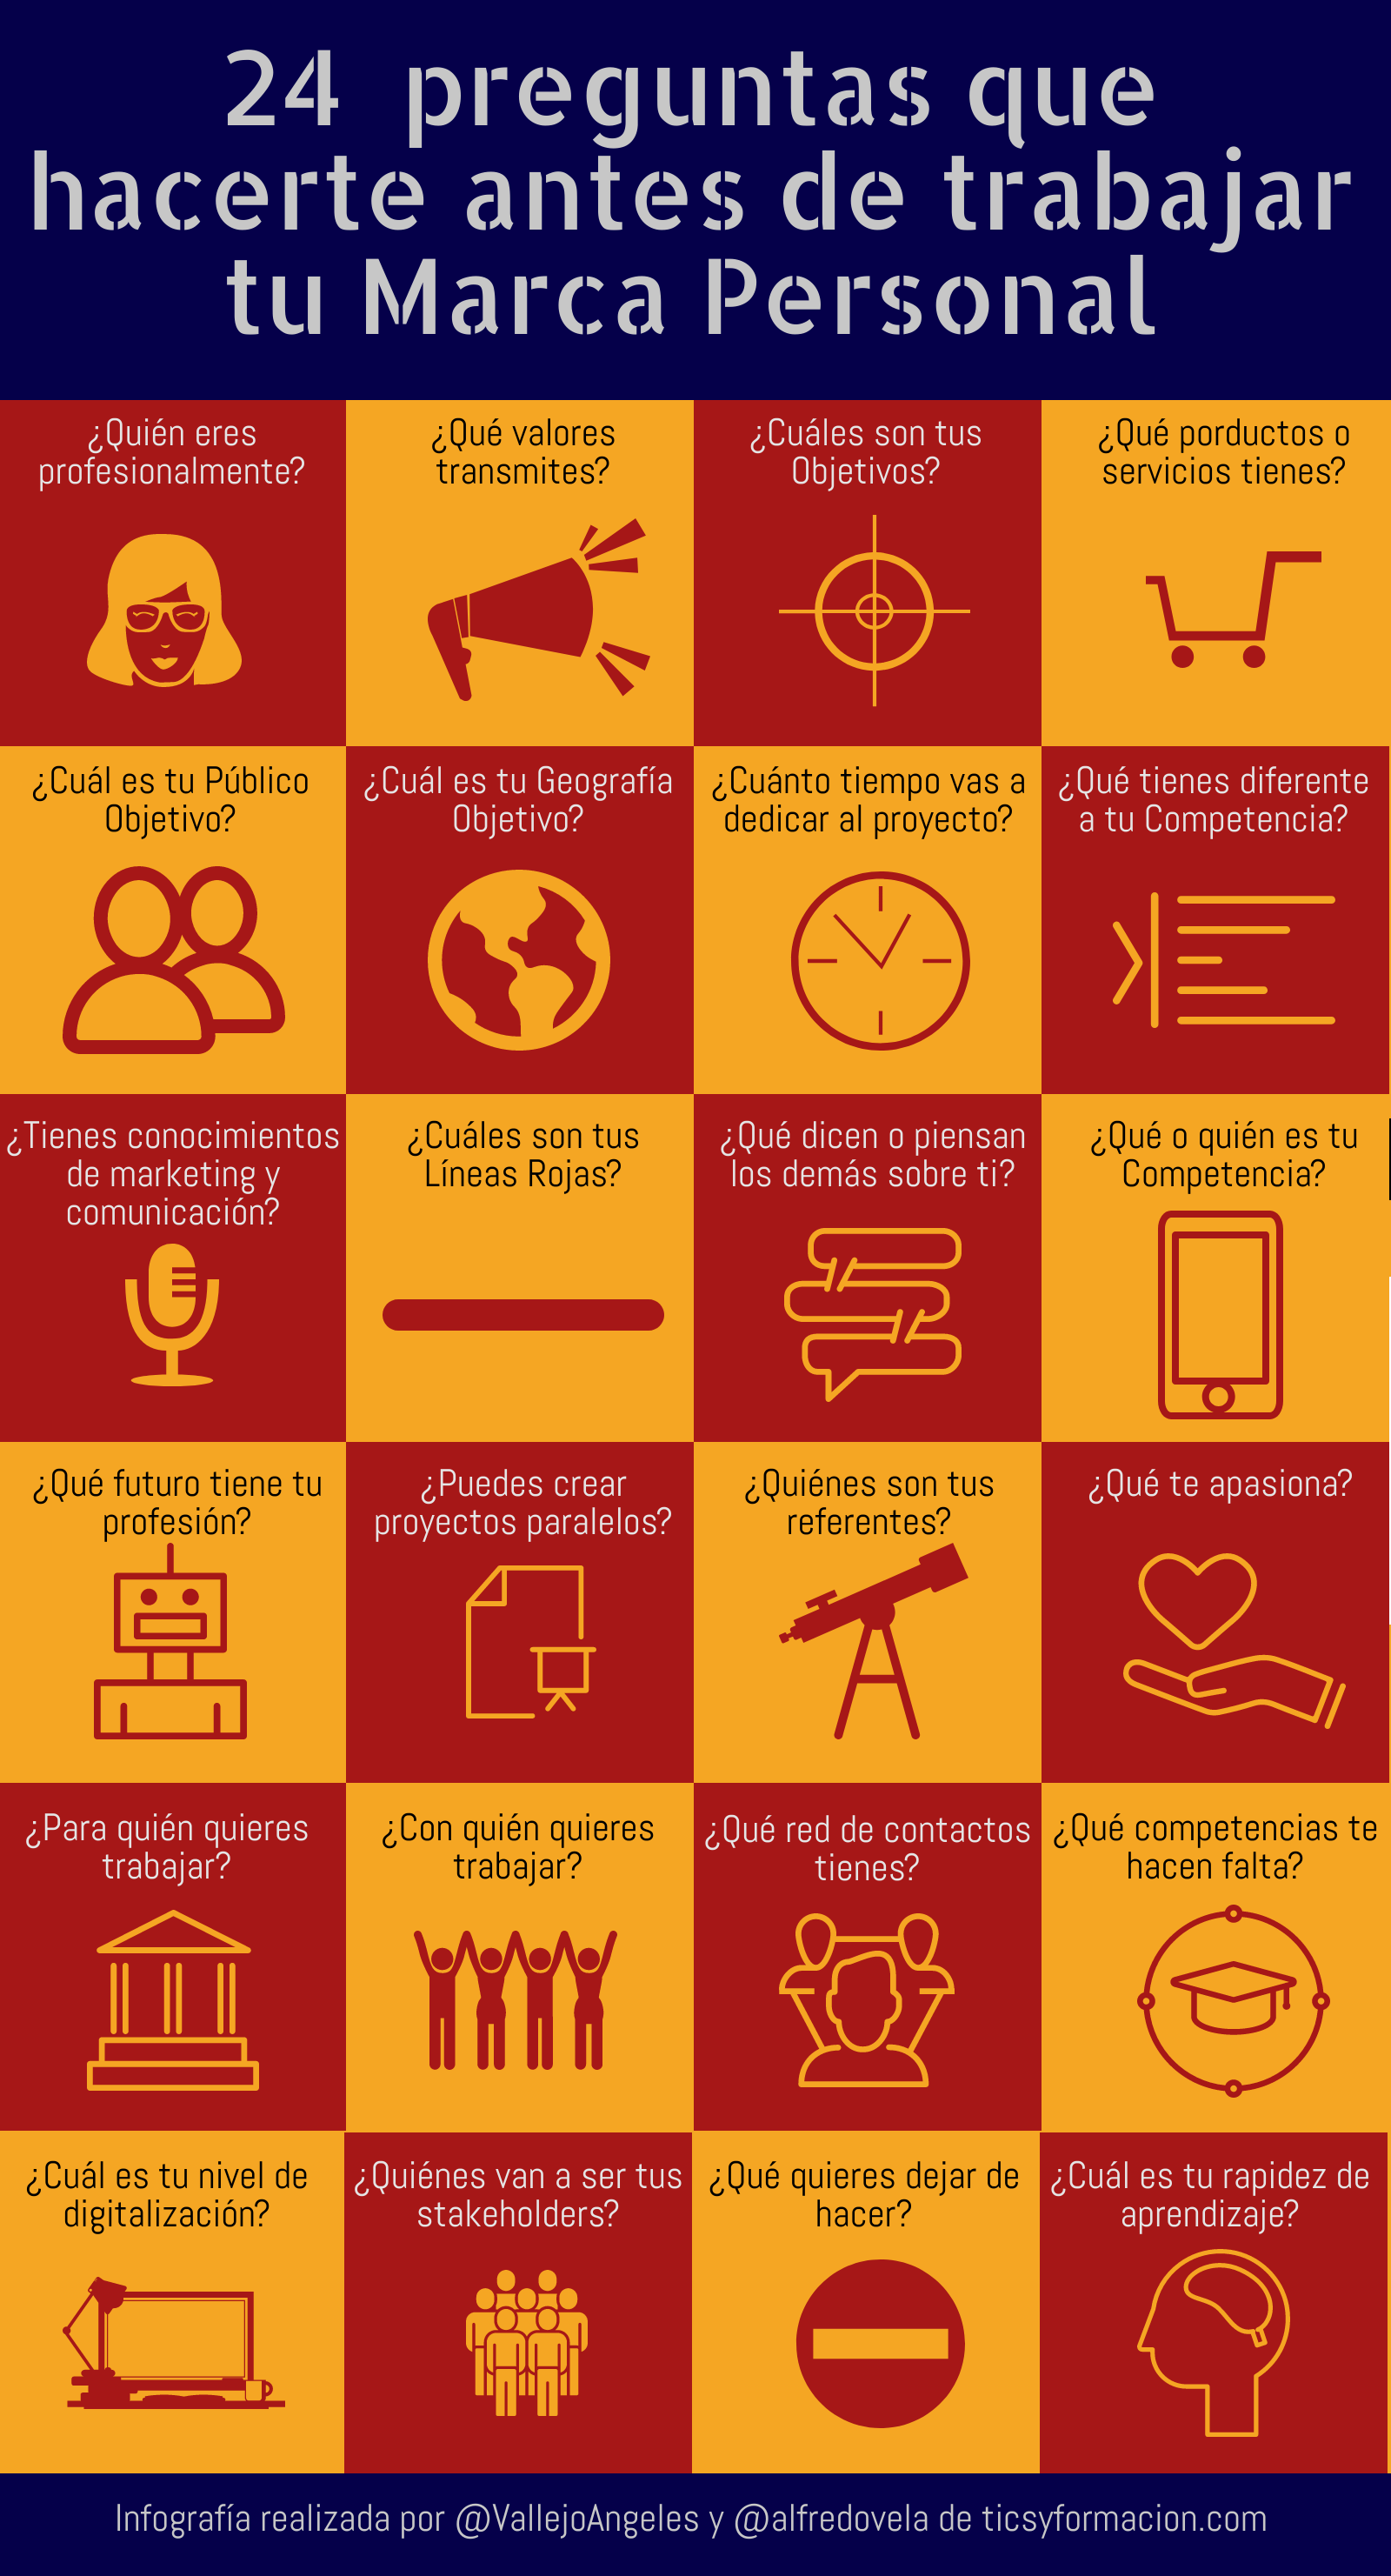 24 preguntas que hacerte antes de trabajar tu Marca Personal #infografia #marcapersonal